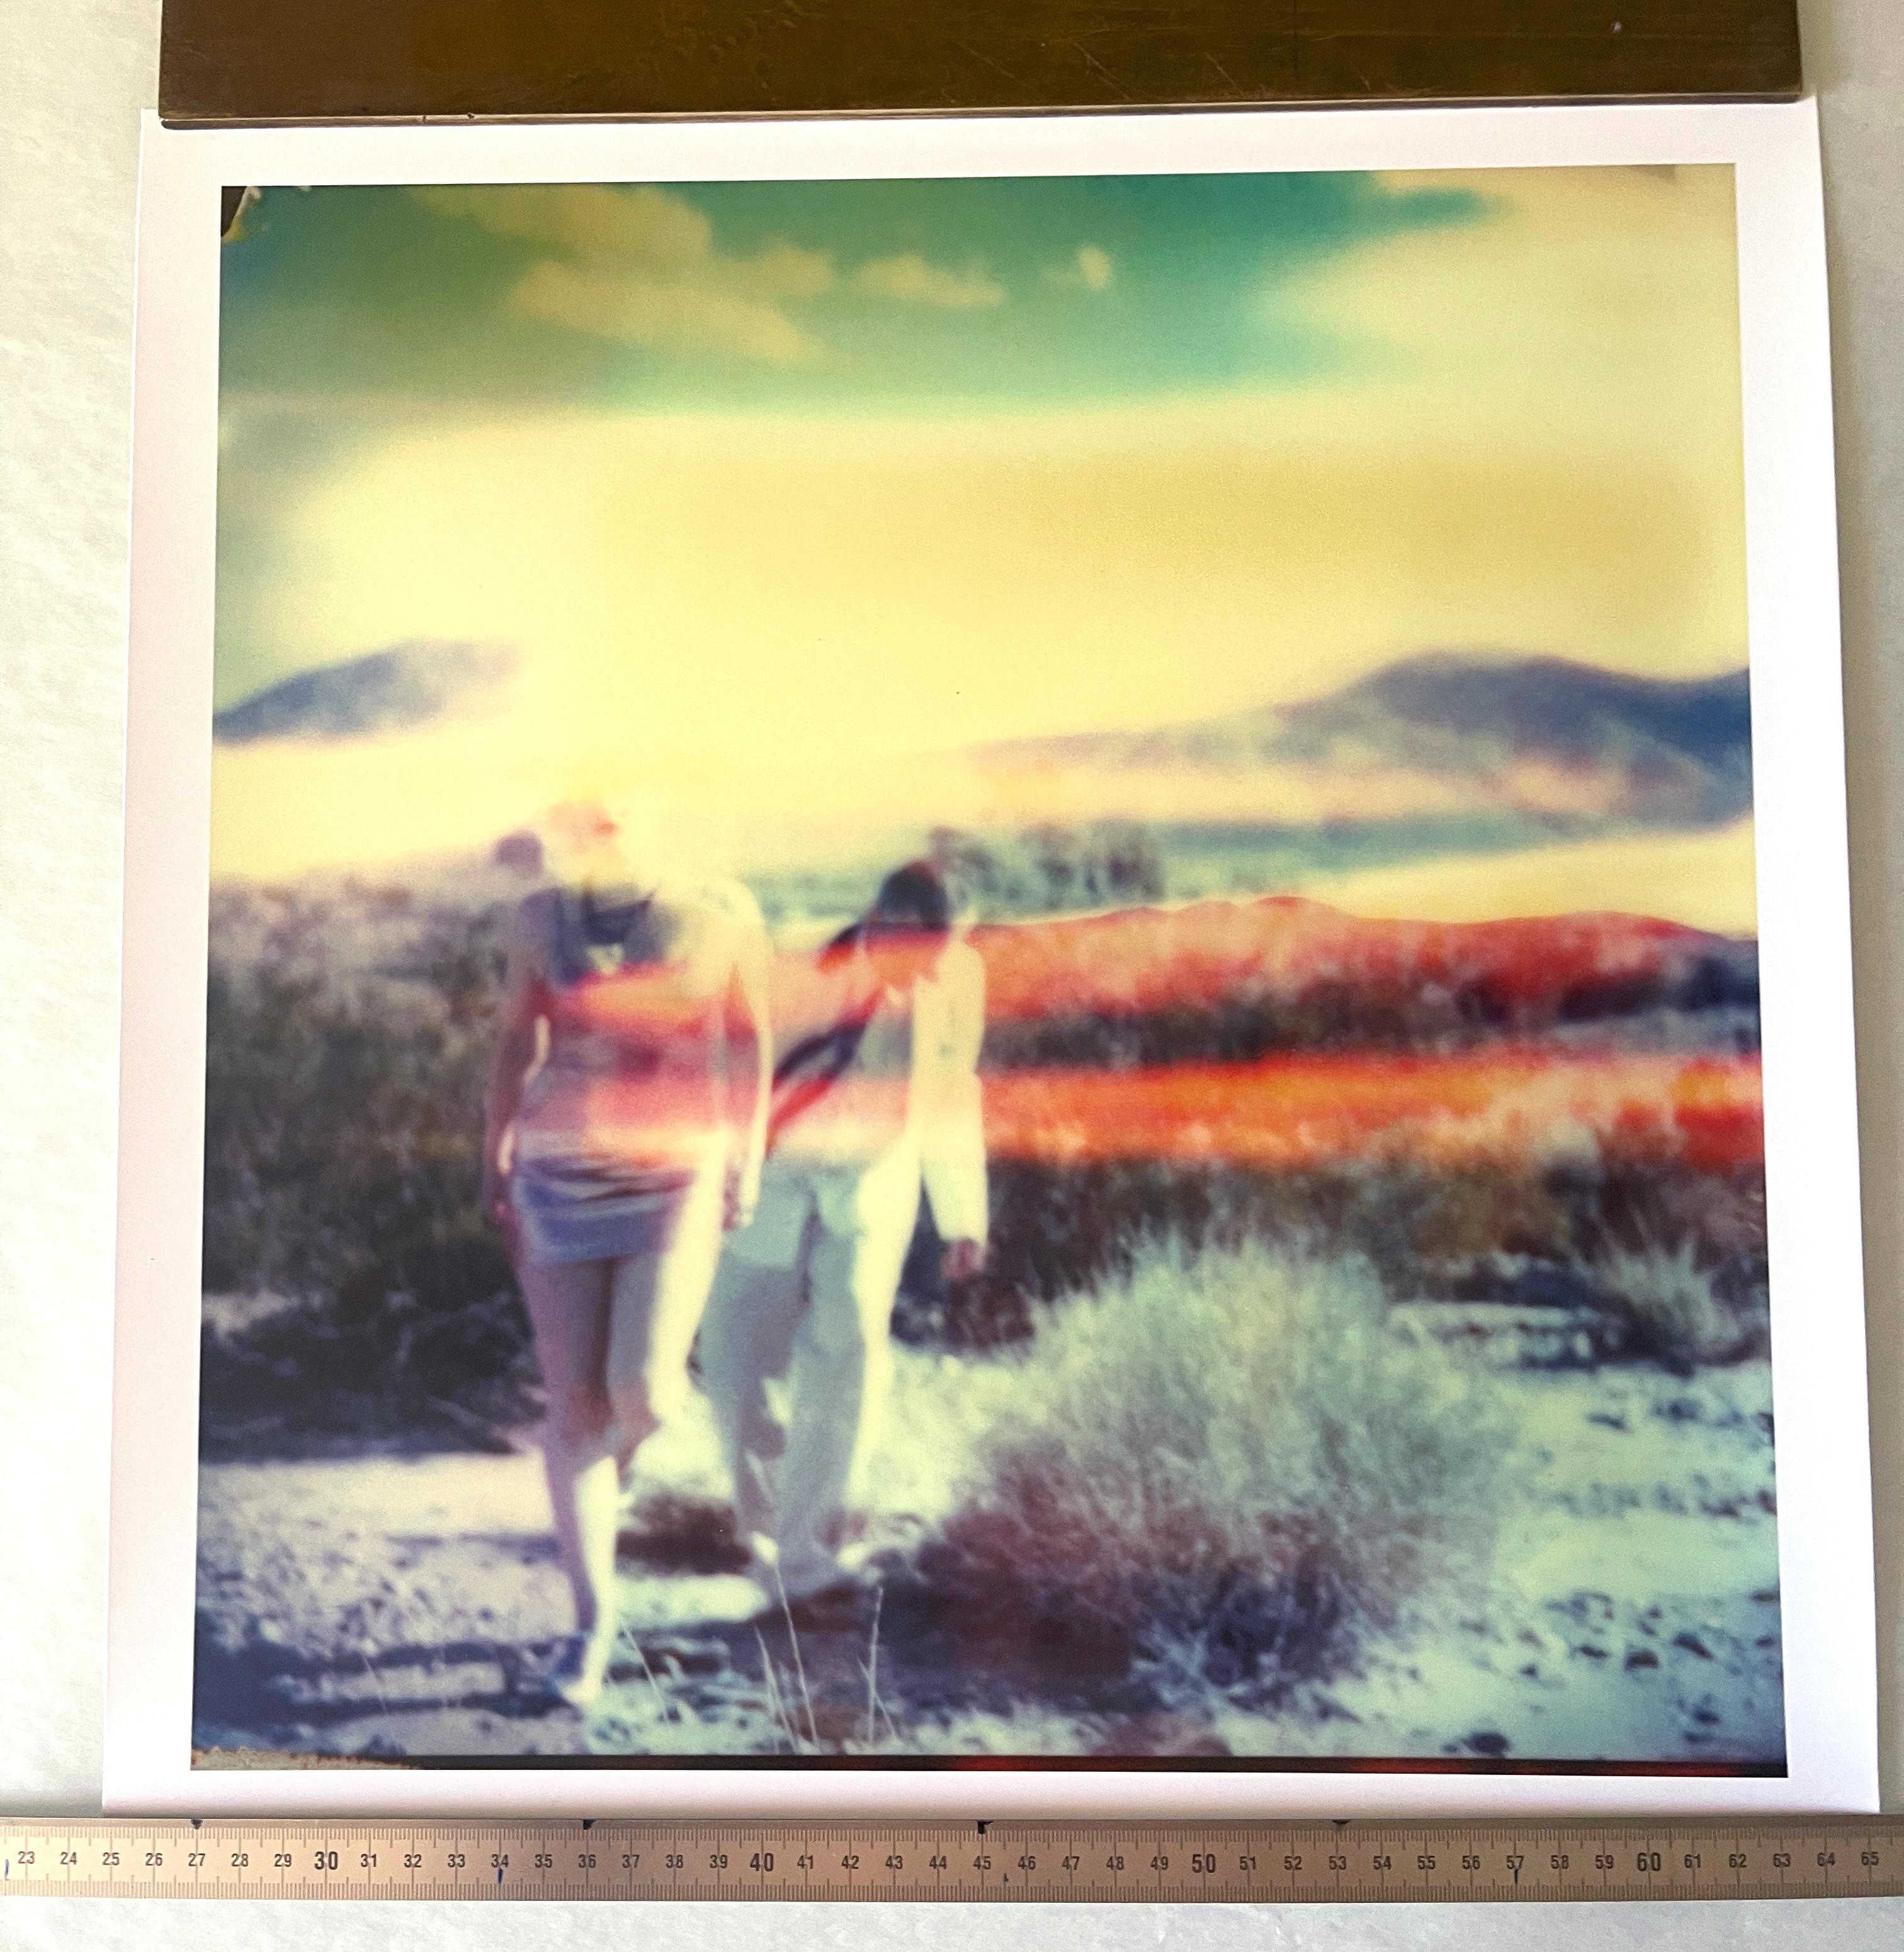 Memory of a Dream (29 Palms, CA) – Polaroid, 21. Jahrhundert, abgelaufen, zeitgenössisch – Photograph von Stefanie Schneider